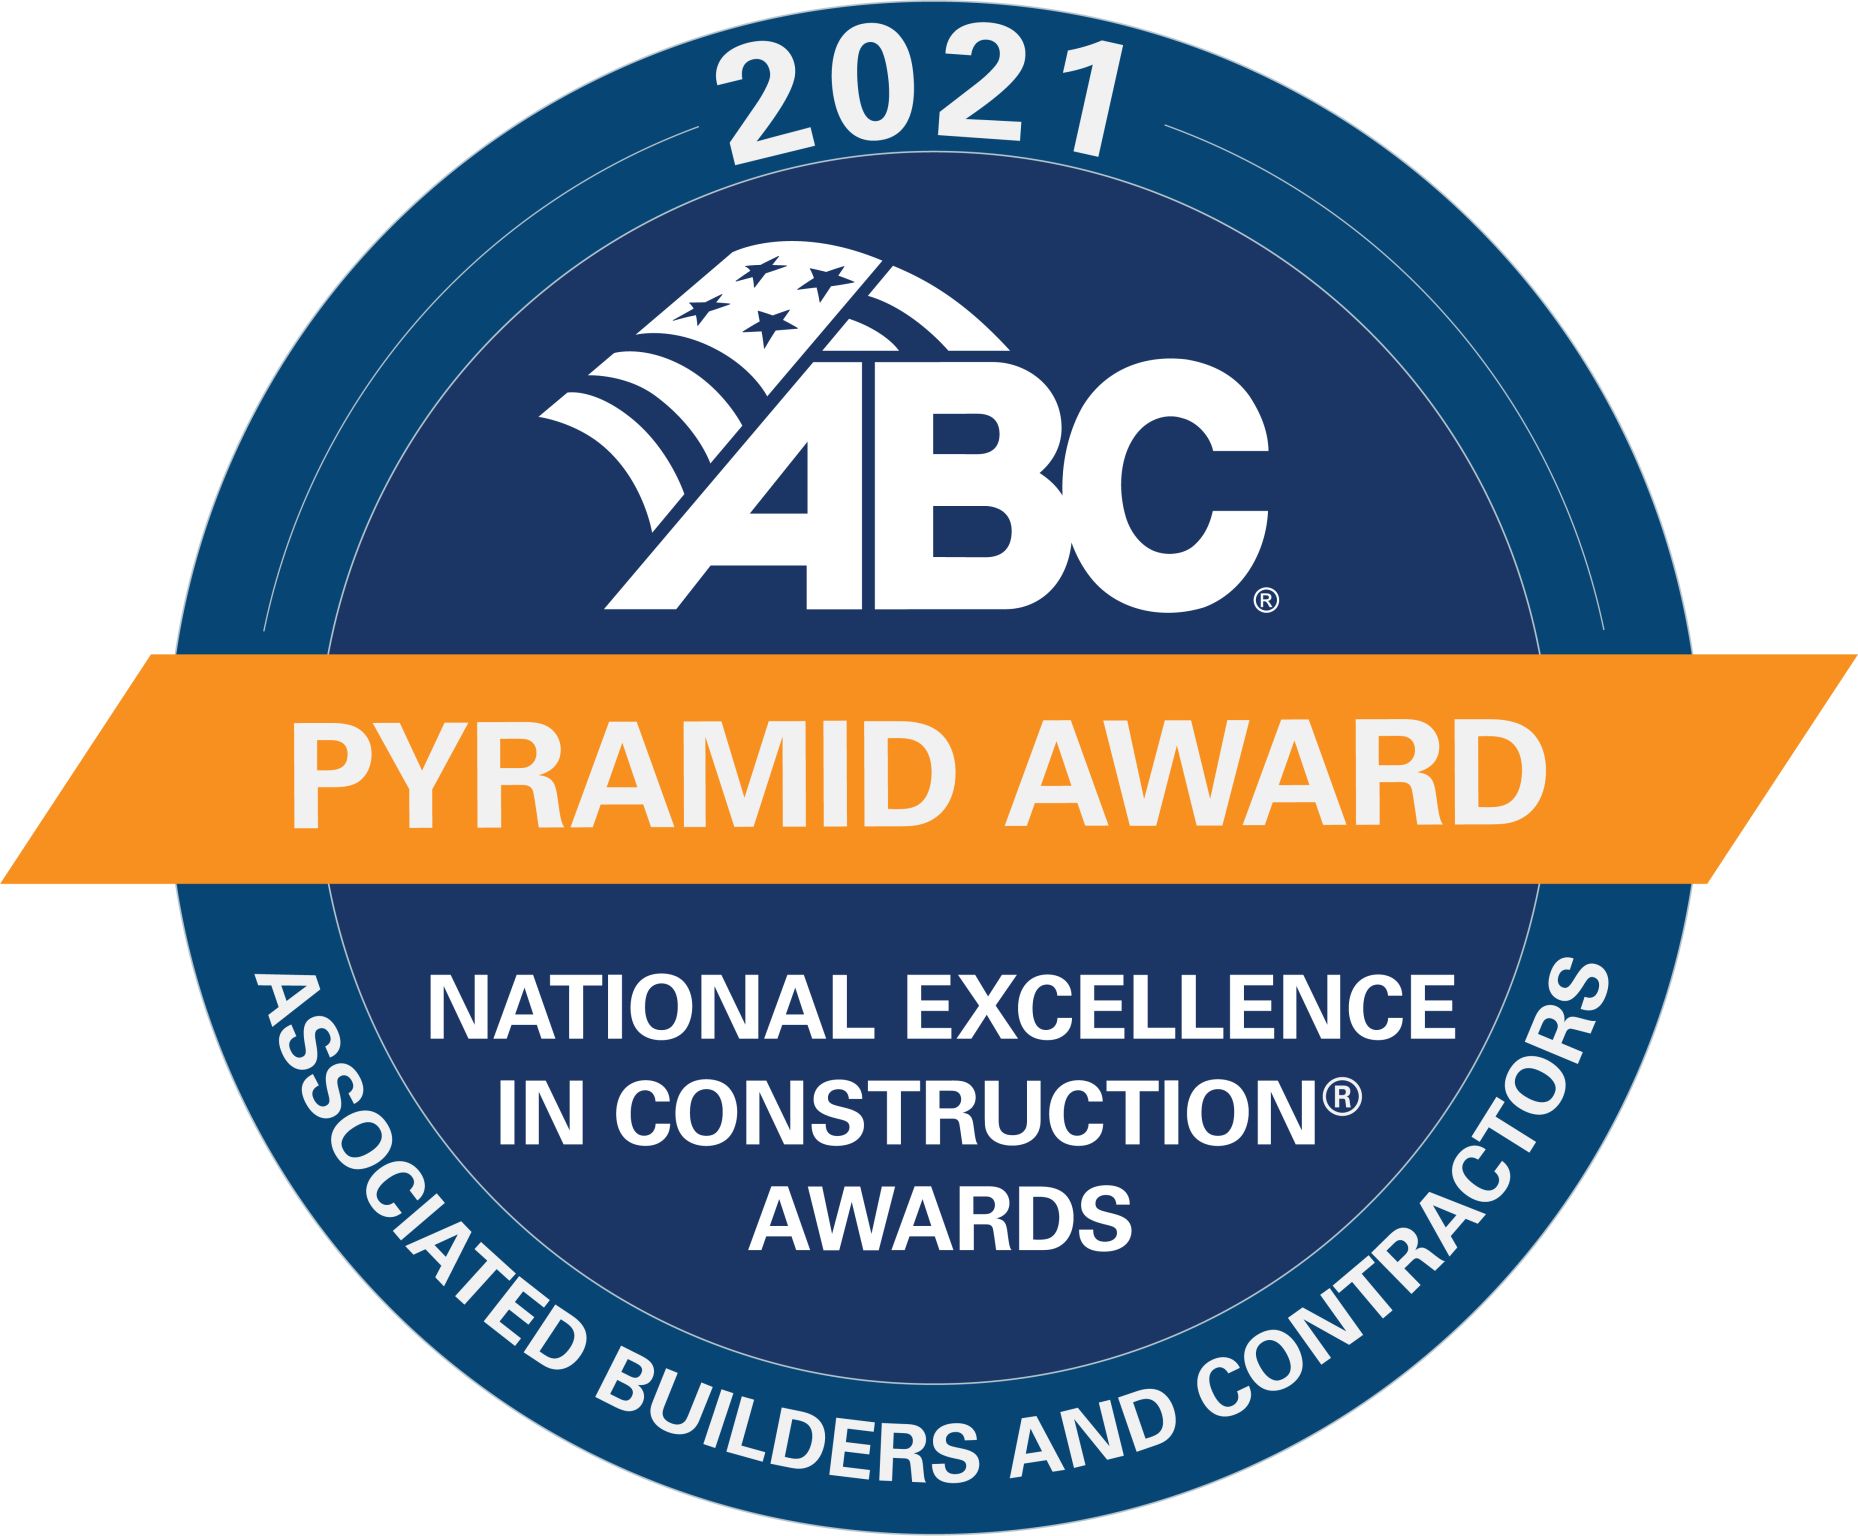 El proyecto del Centro de Convenciones de Cox Business, premiado con la Excelencia Nacional de la Construcción 2021